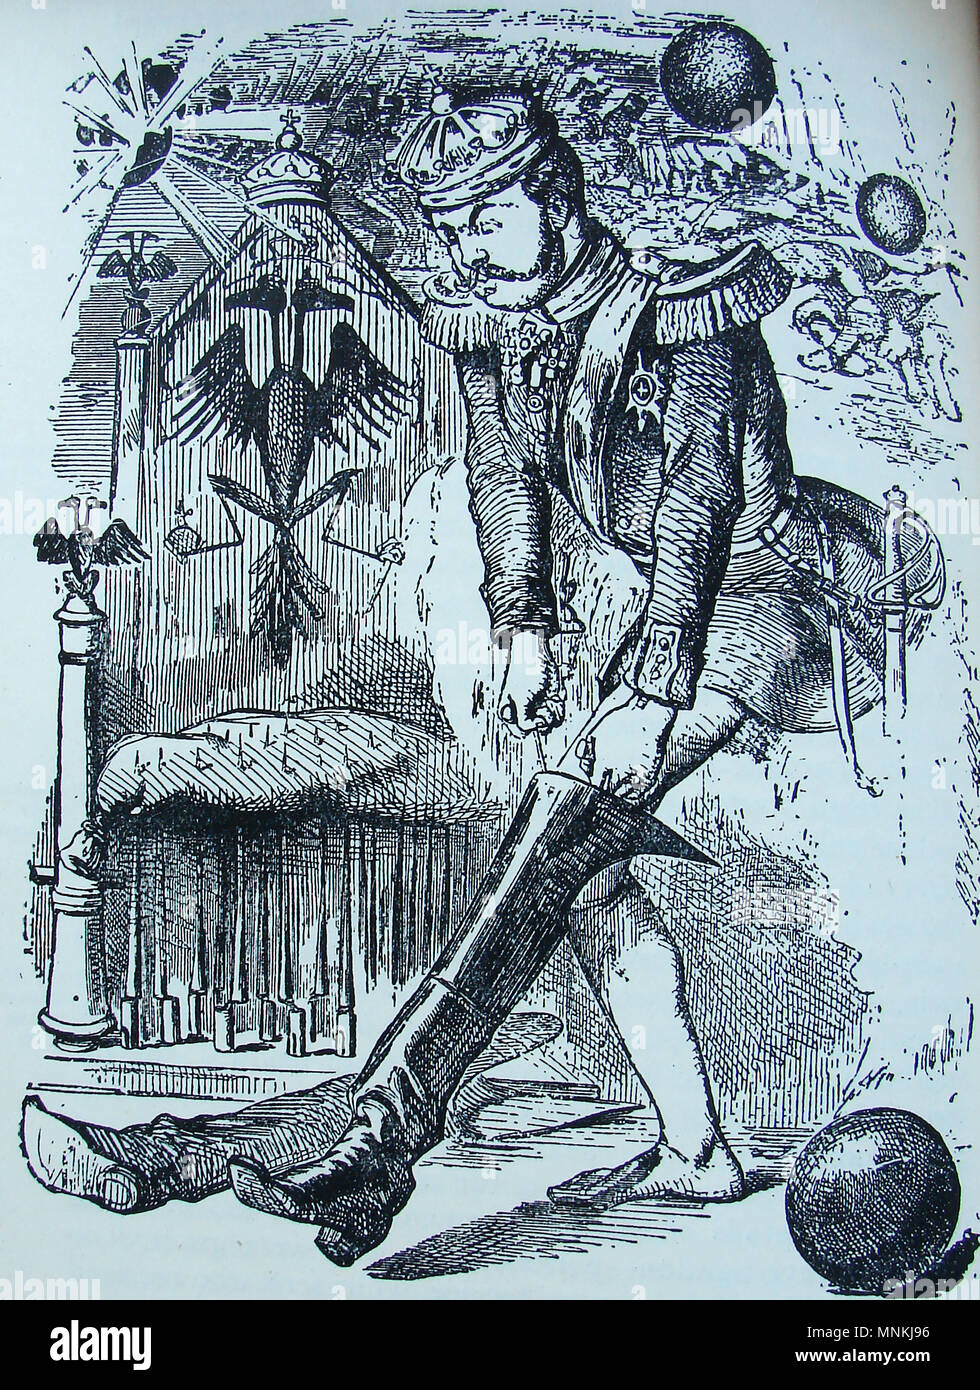 Britische politische Karikatur der Zeit - den jungen Zaren Alexander II. (1818-1881) von Russland versucht, auf seiner neuen Stiefeln, wenn "in sein Eigentum" während des Krimkrieges. Krieg war er es, der Alaska in die Vereinigten Staaten im Jahr 1867 verkauft Stockfoto